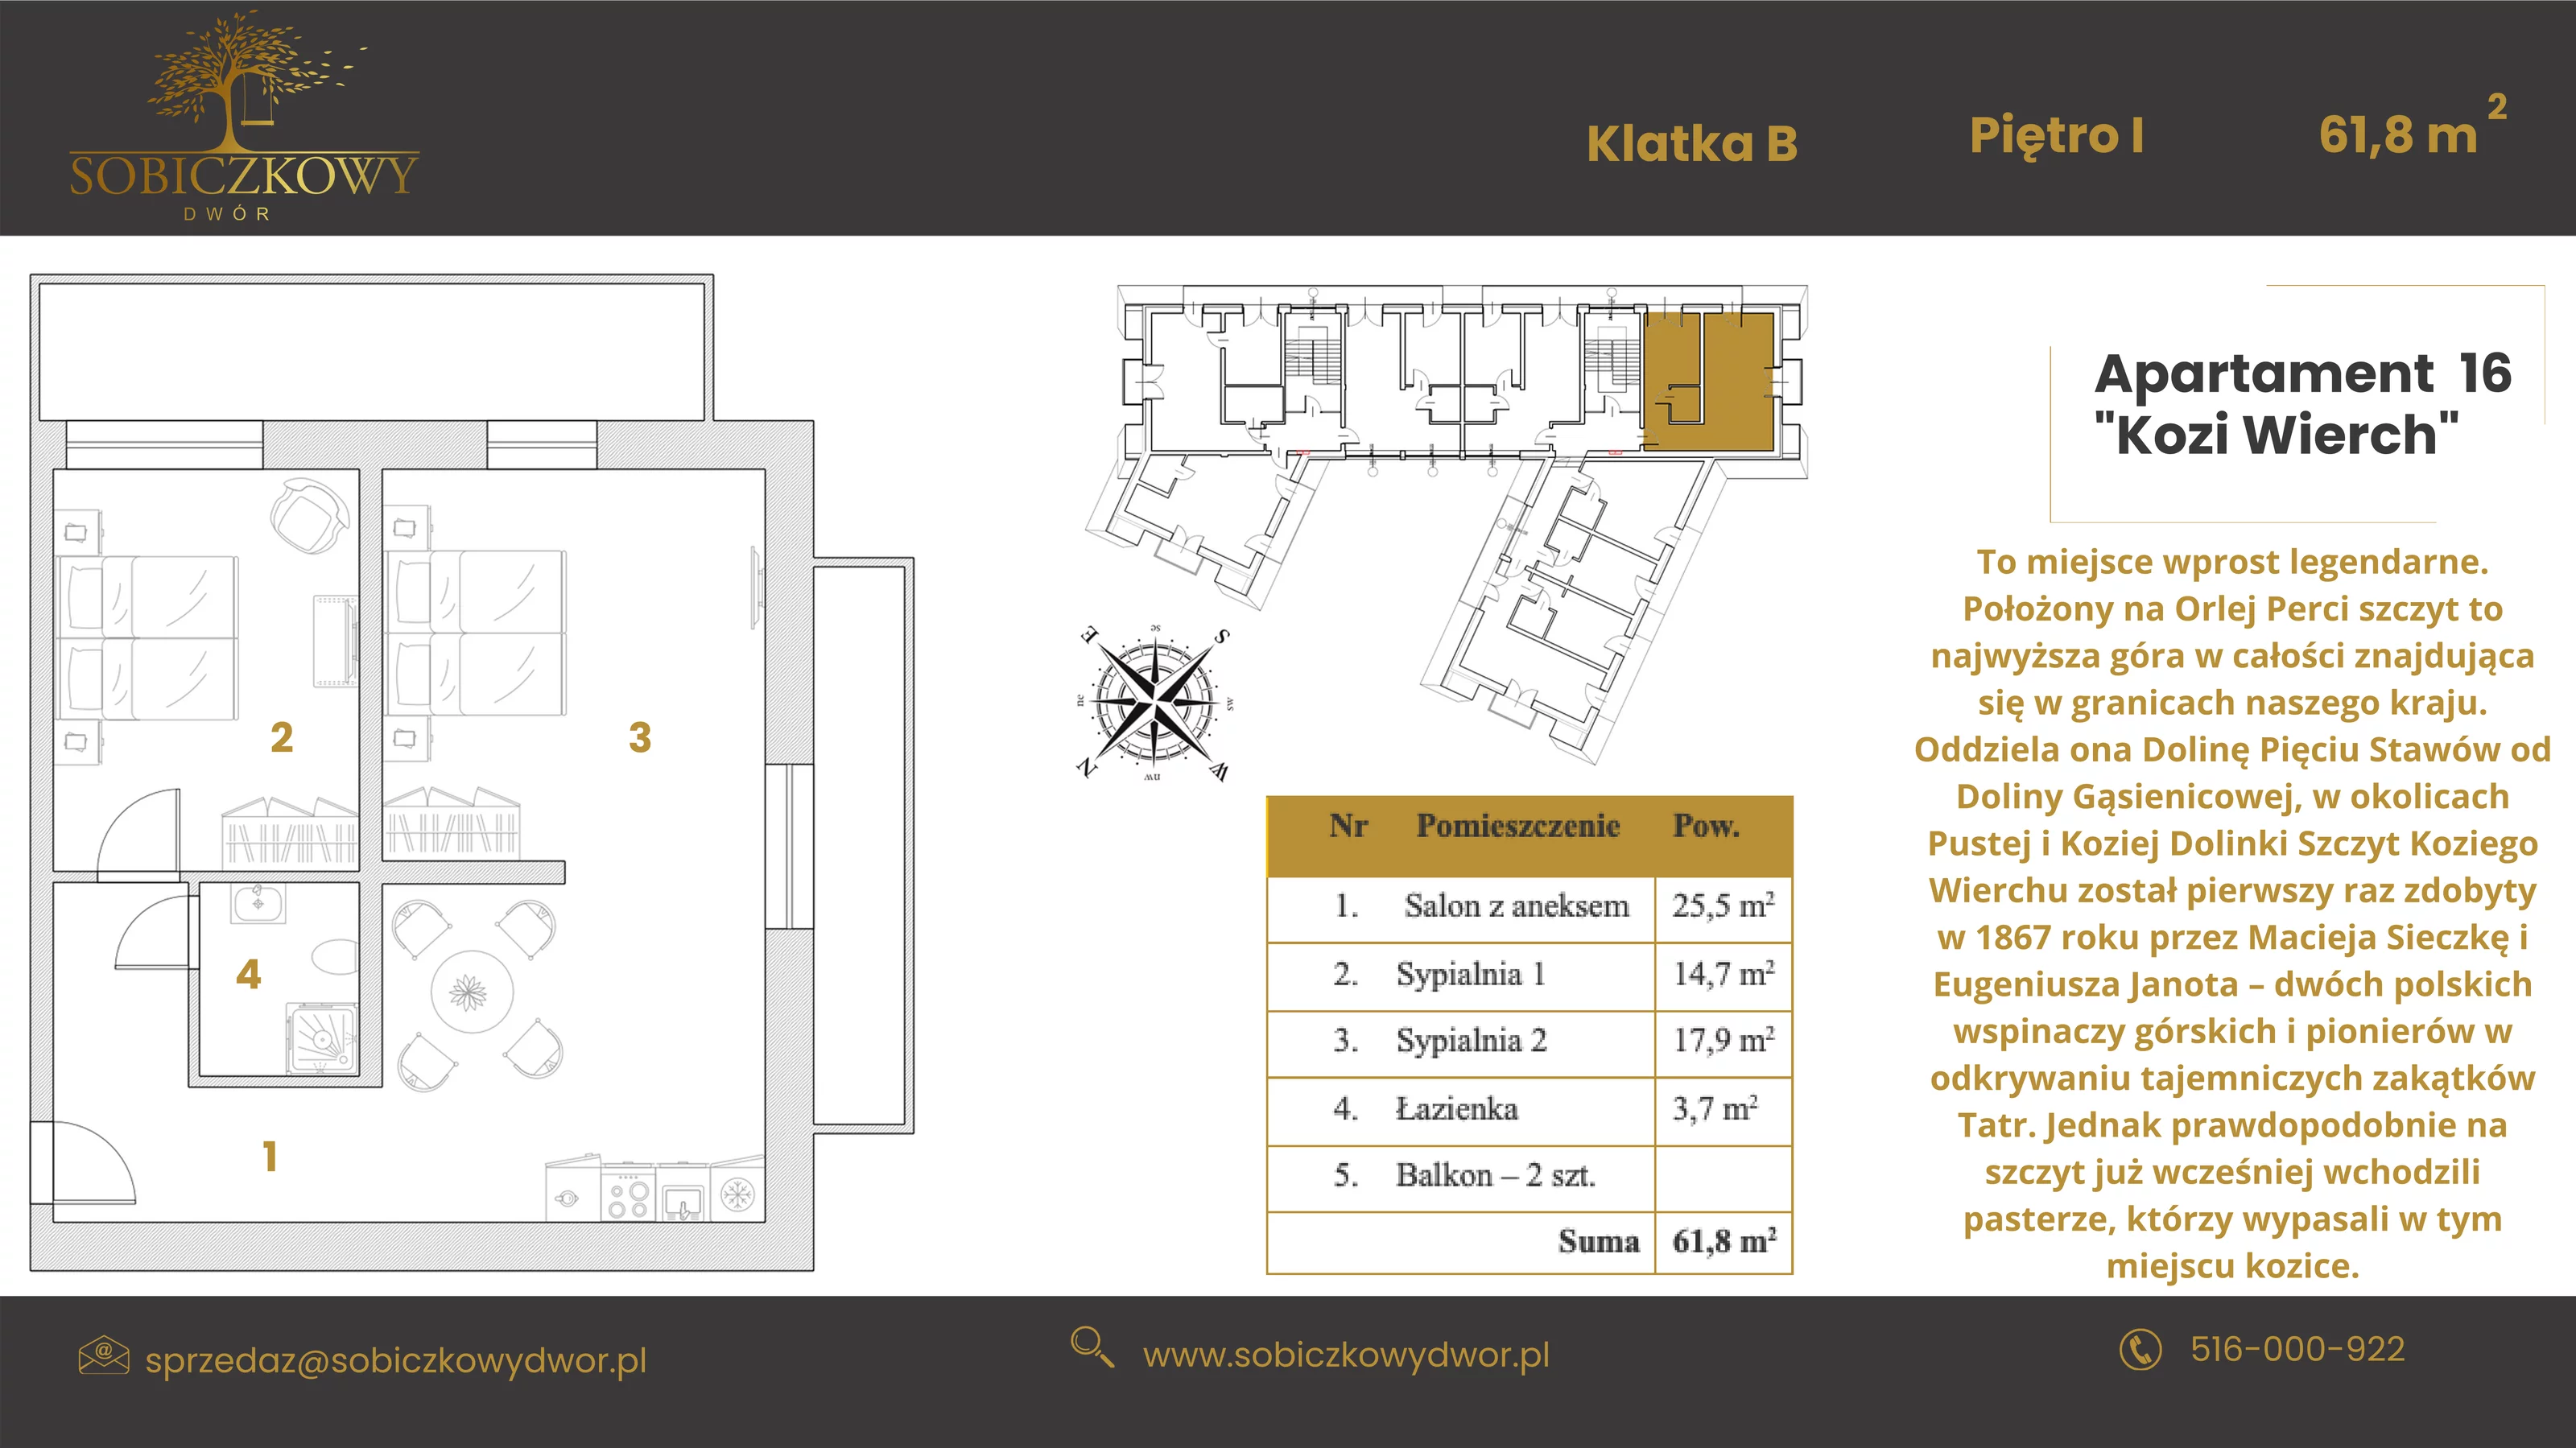 Apartament 61,80 m², piętro 1, oferta nr 16 "Kozi Wierch", Sobiczkowy Dwór, Kościelisko, ul. Sobiczkowa Bór 1